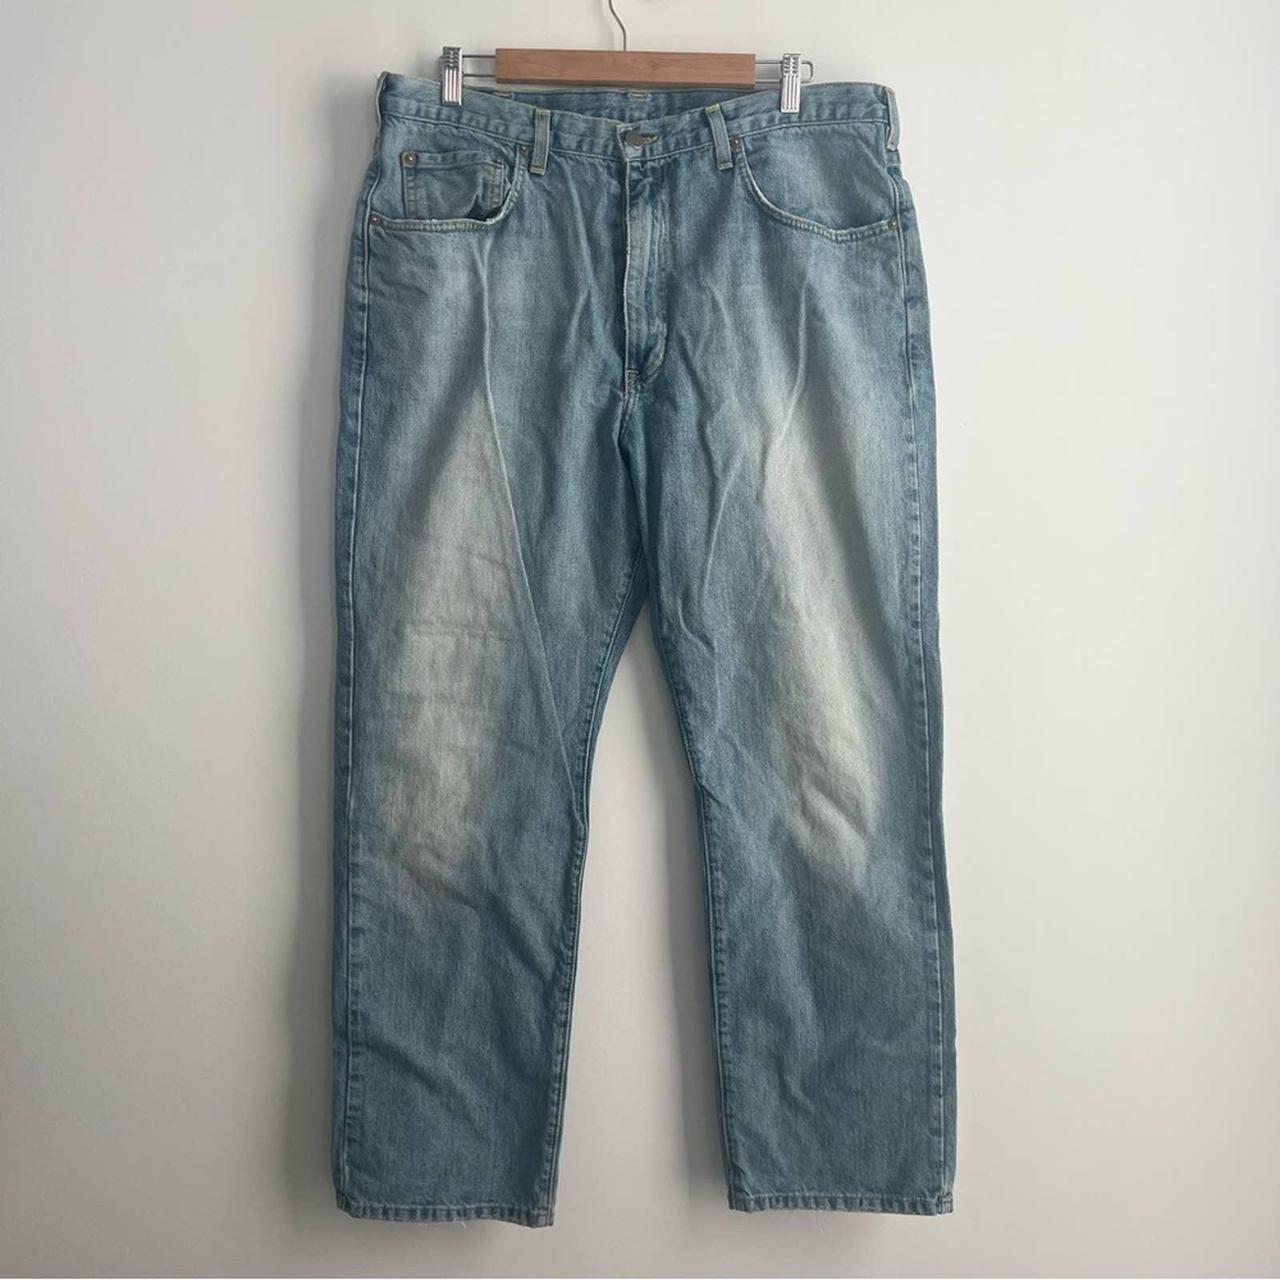 Vintage Polo Ralph Lauren Dungarees Jeans Men’s Size... - Depop